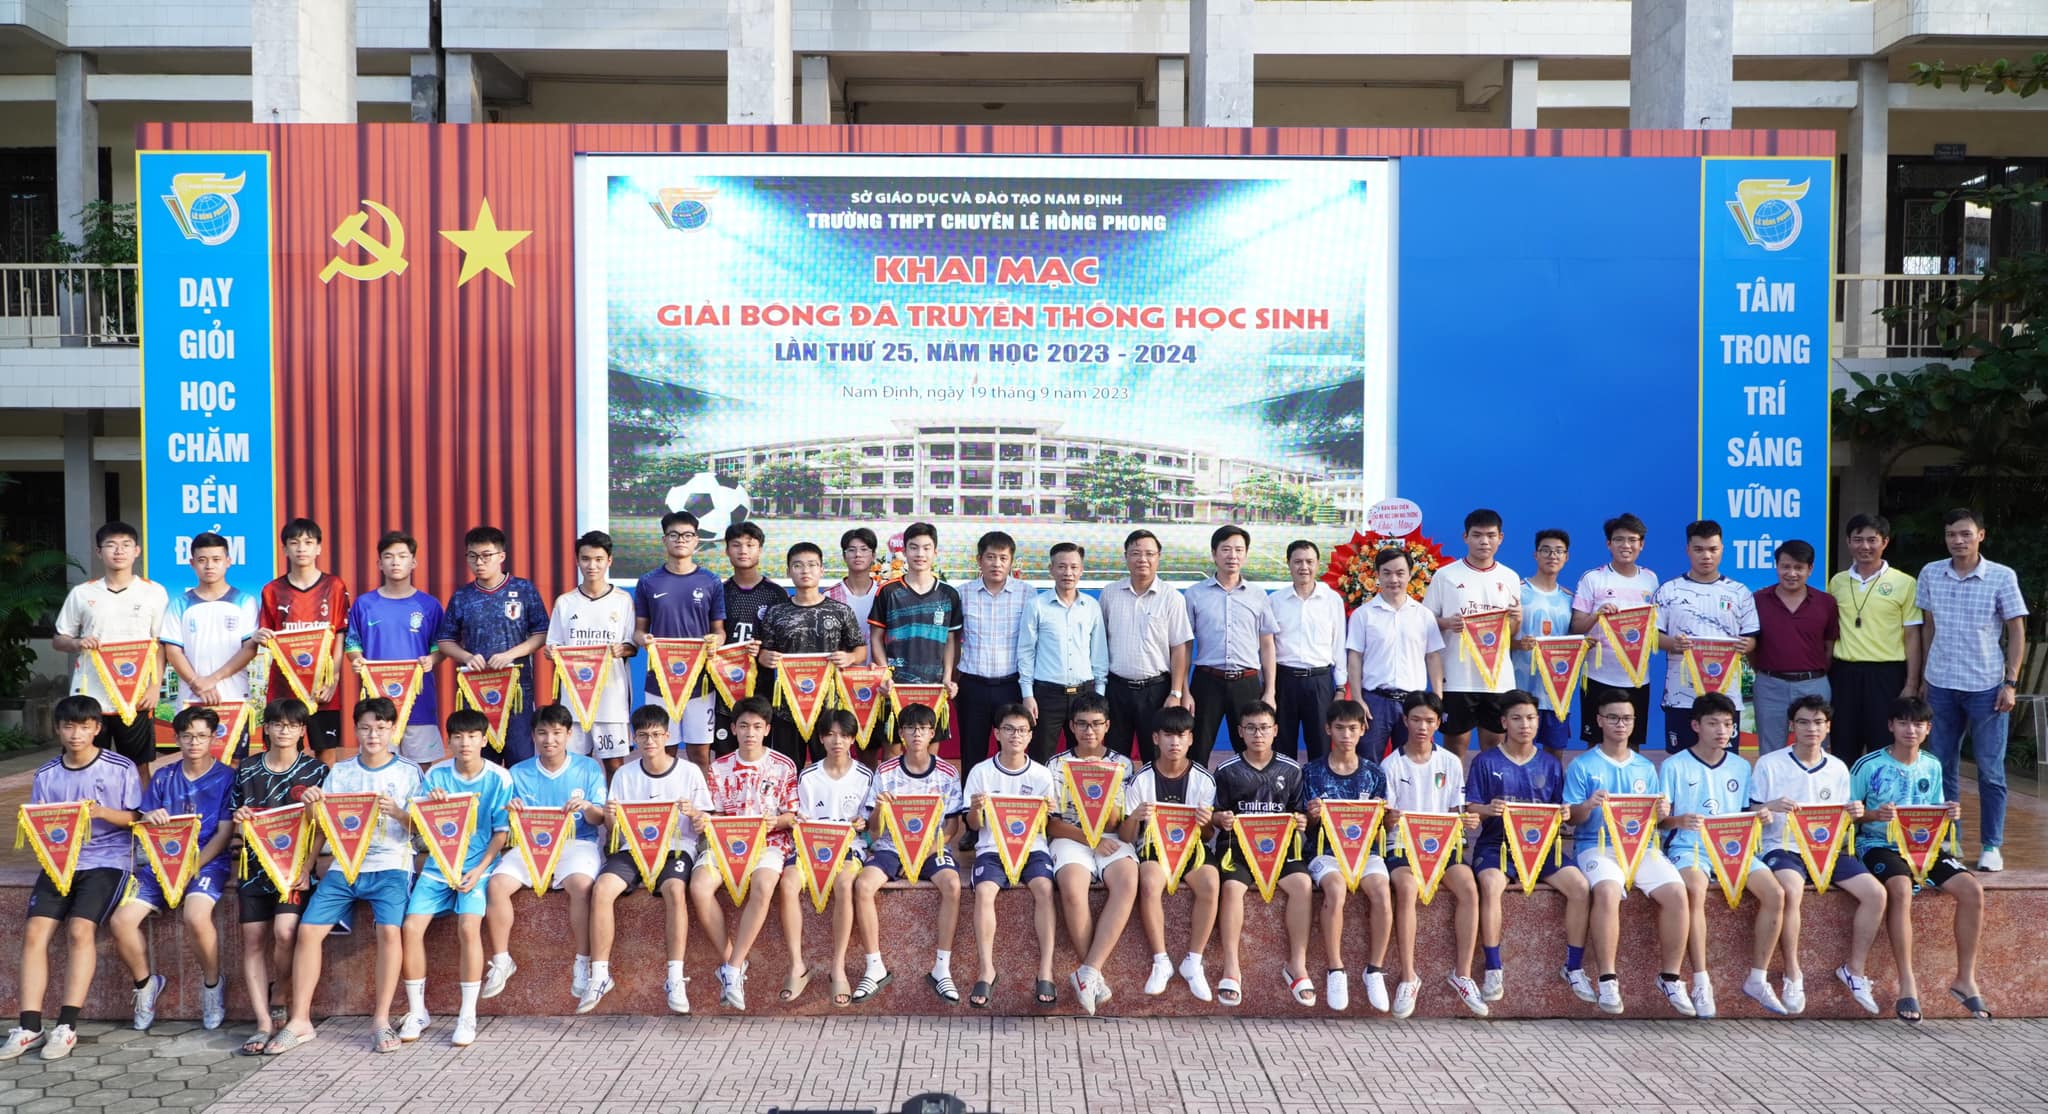 Khai mạc giải bóng đá truyền thống của học sinh trường THPT chuyên Lê Hồng Phong lần thứ 25